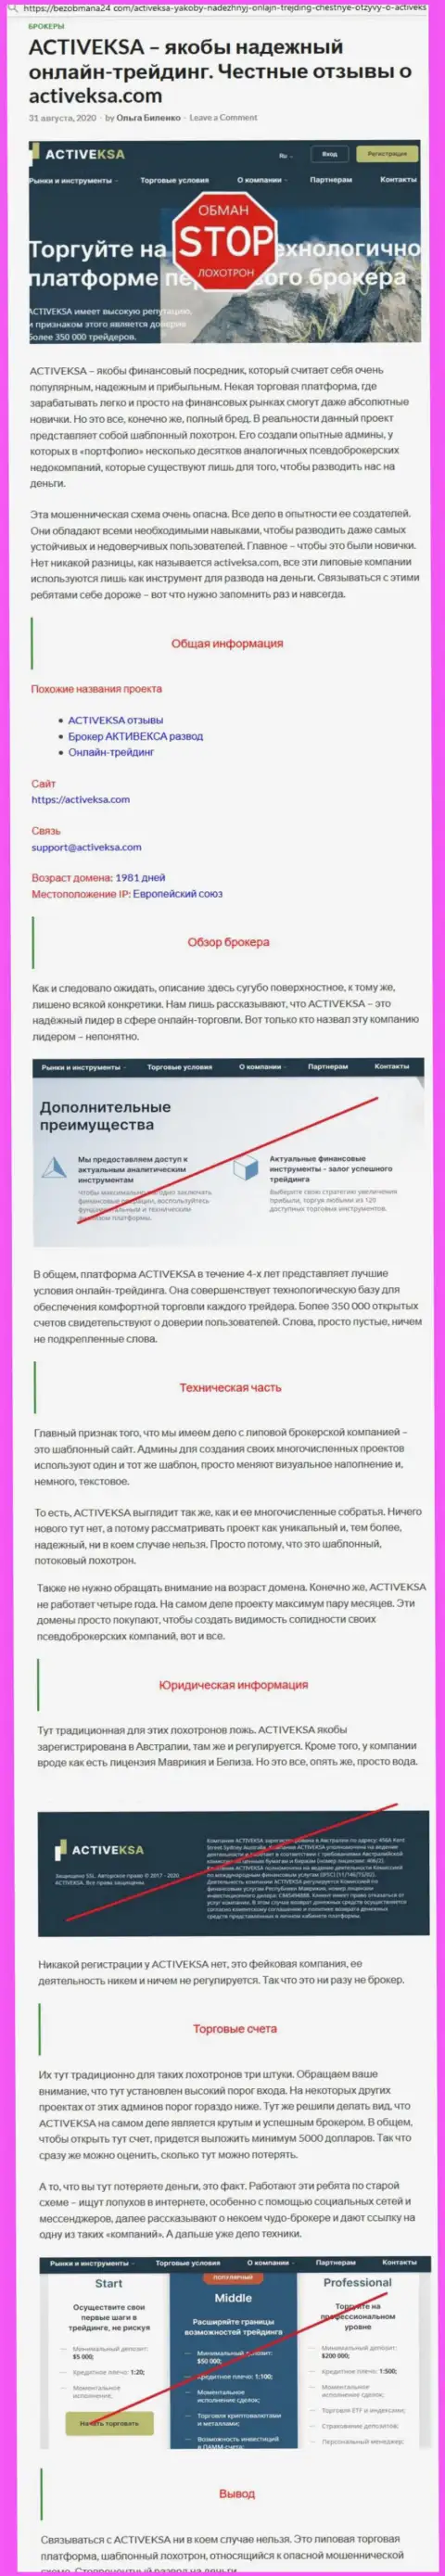 Activeksa Com - это ЛОХОТРОНЩИК !!! Мнения и реальные факты противозаконных комбинаций в обзорной статье